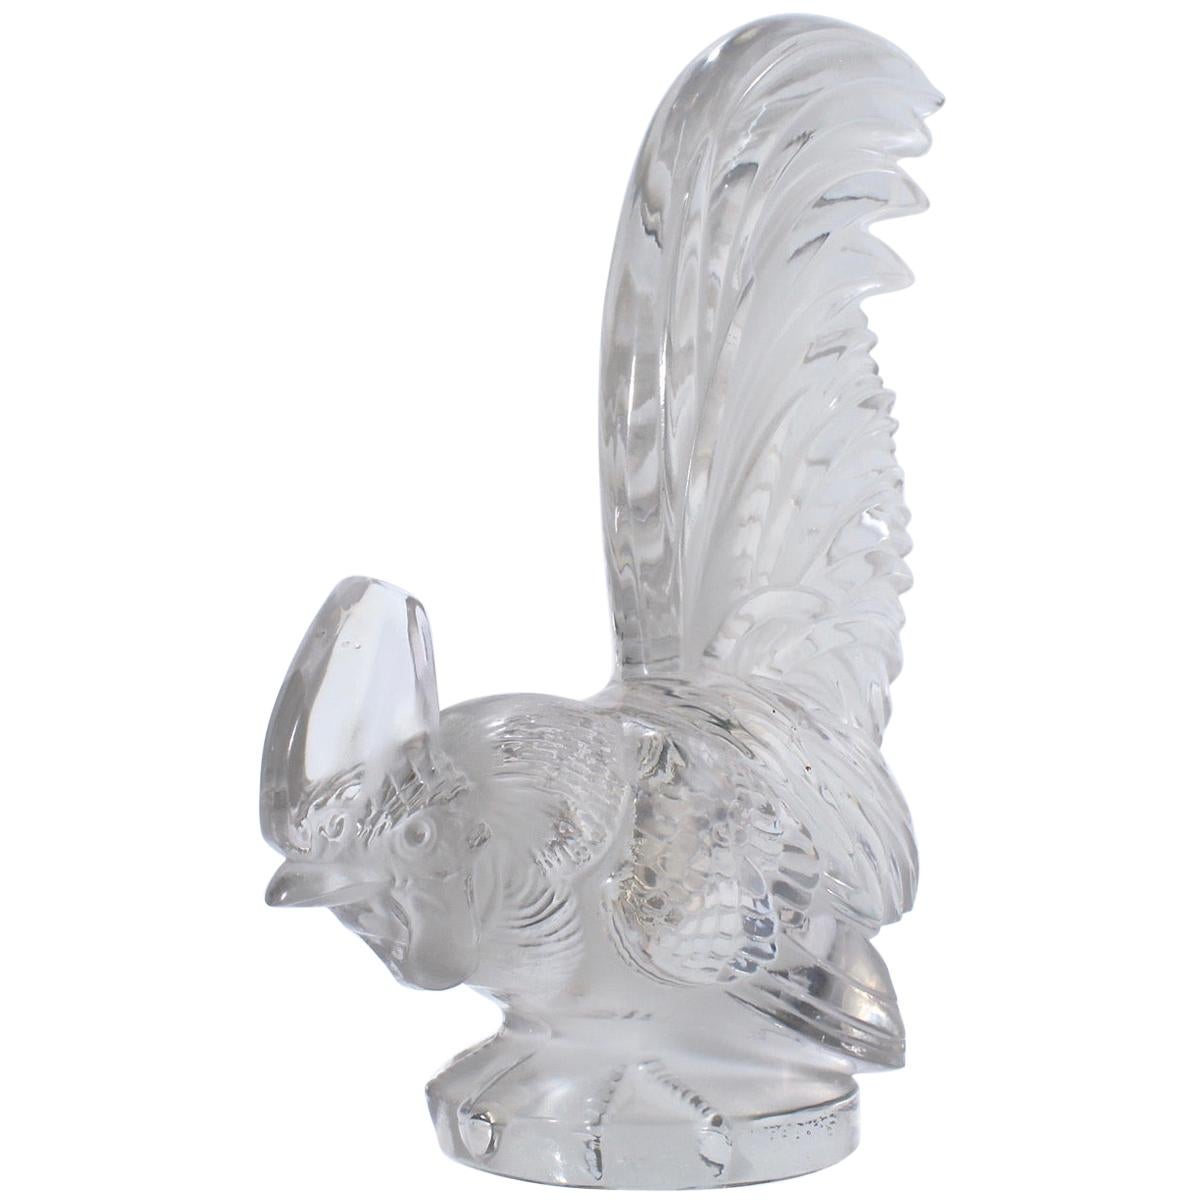 French Art Deco R. Lalique Art Glass Coq Nain Cockerel Car Mascot or Sculpture